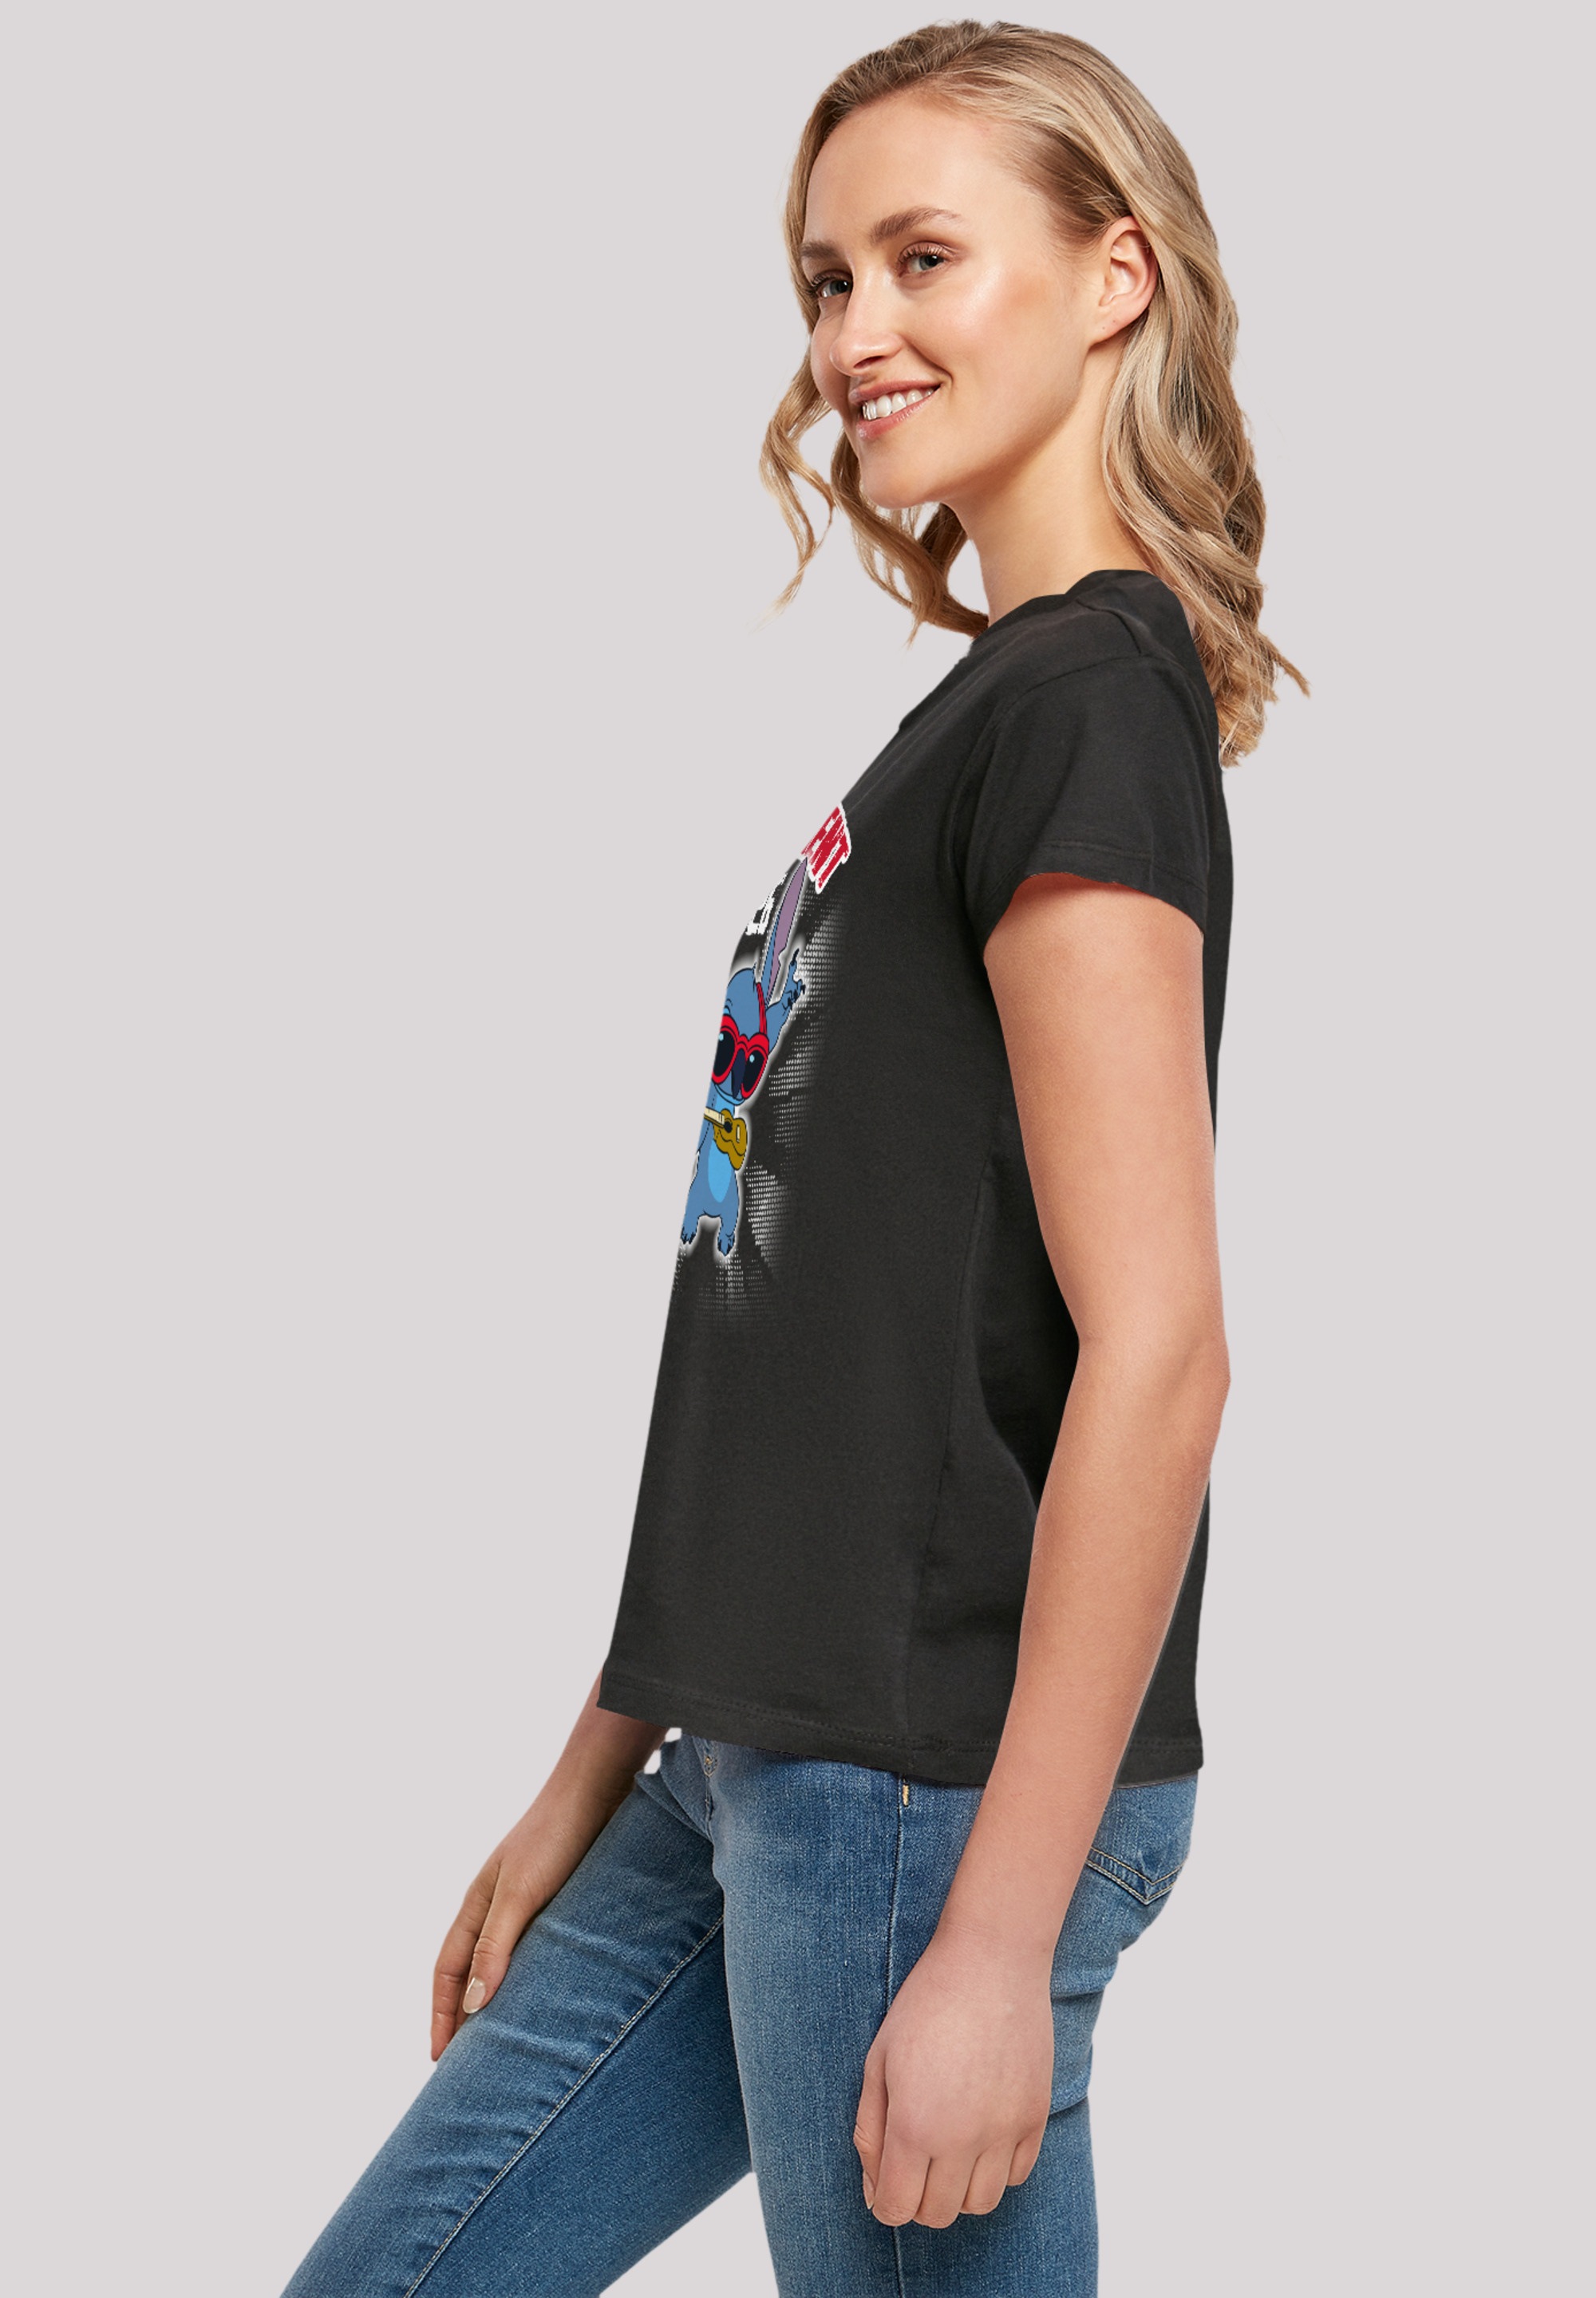 & Qualität Stitch Premium Lilo bestellen »Disney für F4NT4STIC BAUR T-Shirt | Rockstar«,